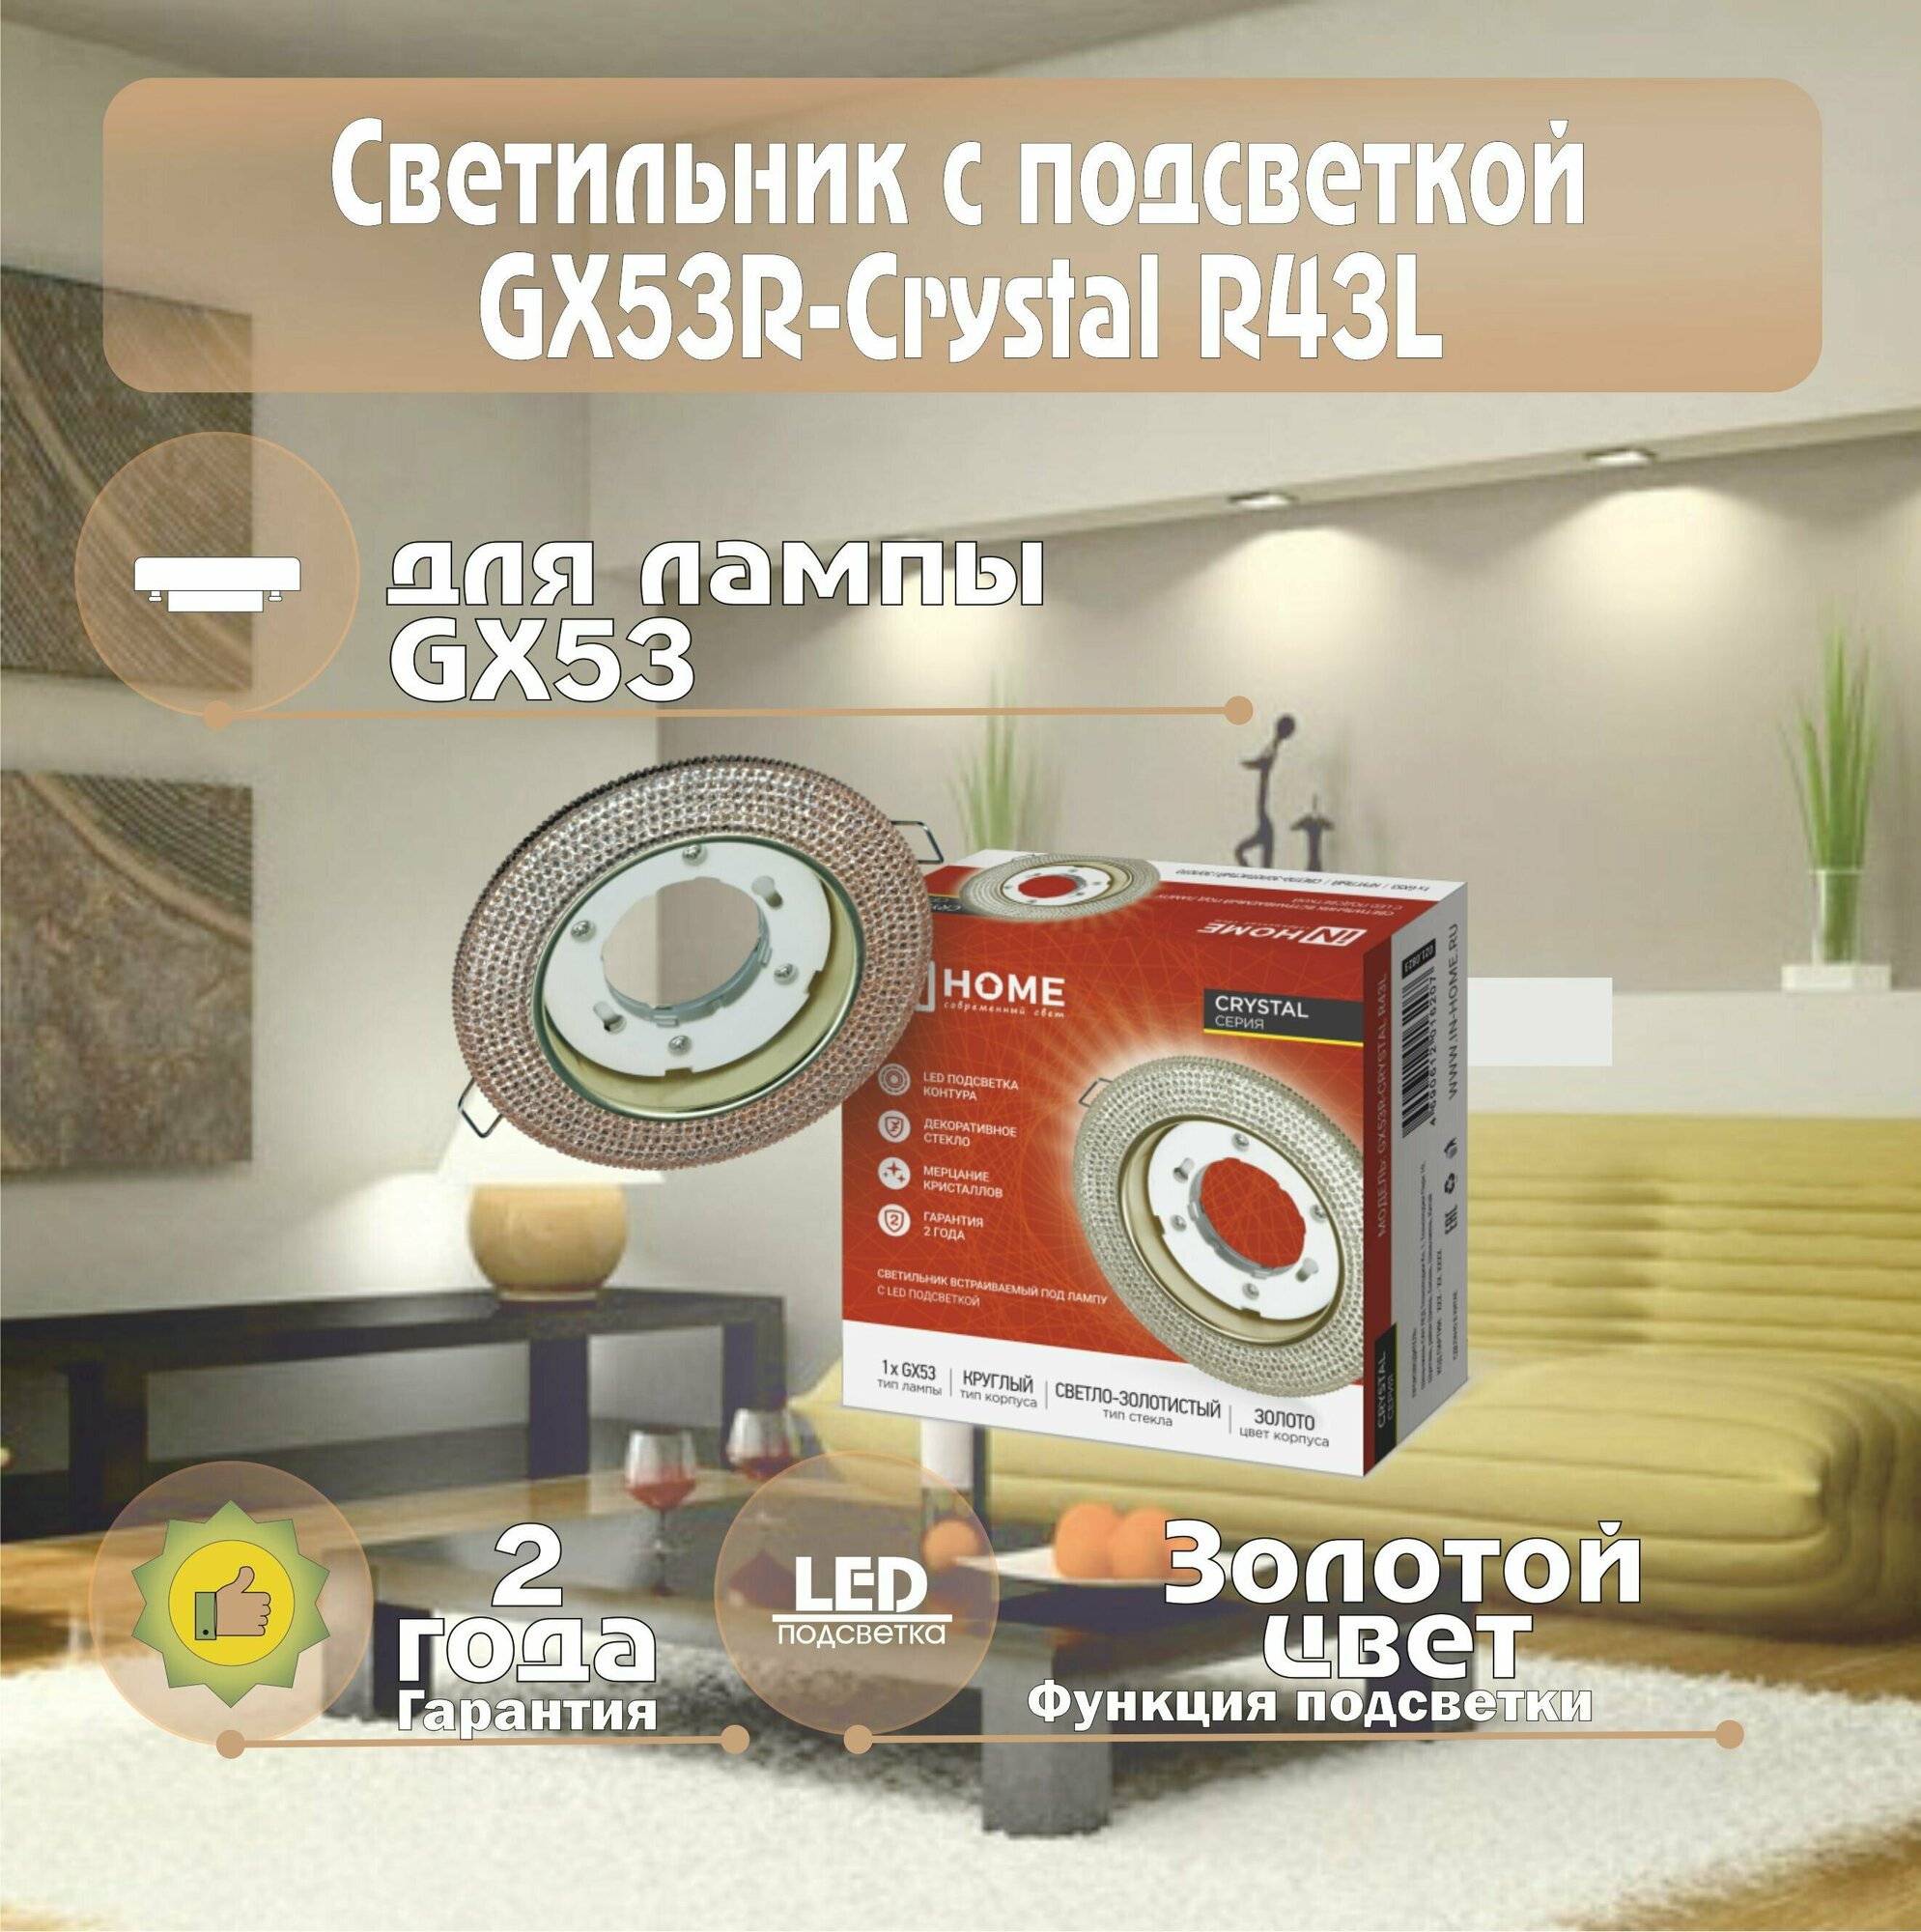 Светильник встраиваемый GX53R-crystal R43L под лампу GX53 с подсветкой IN HOME